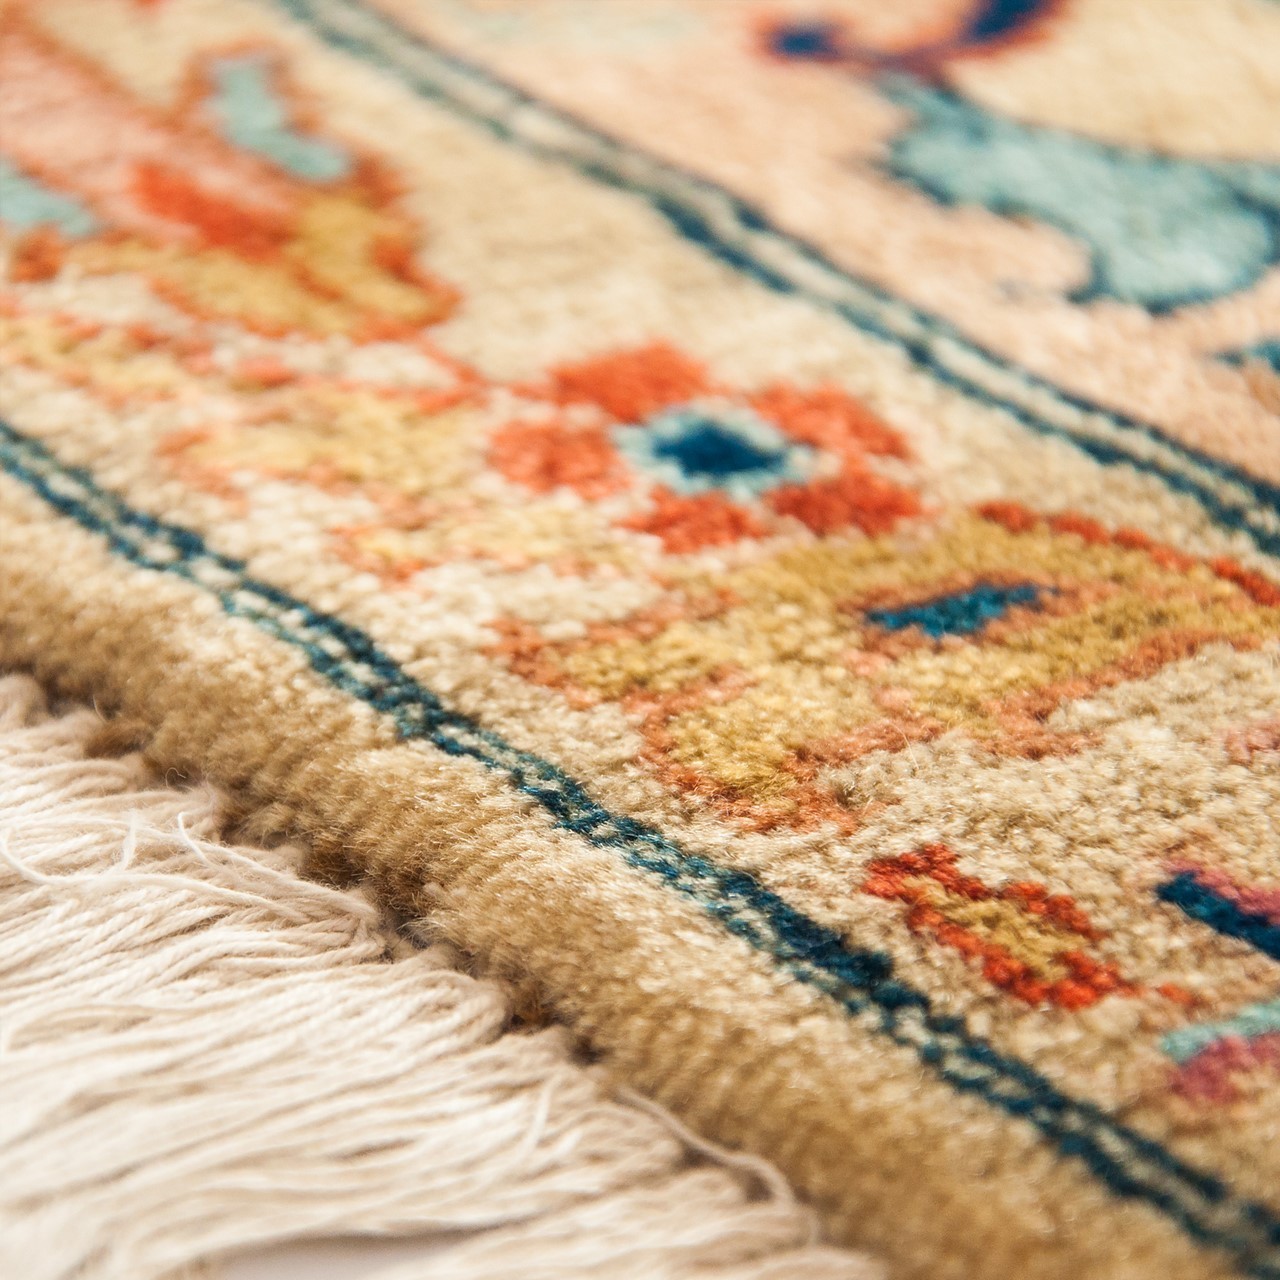 Ferahan Carpet Ref 101969